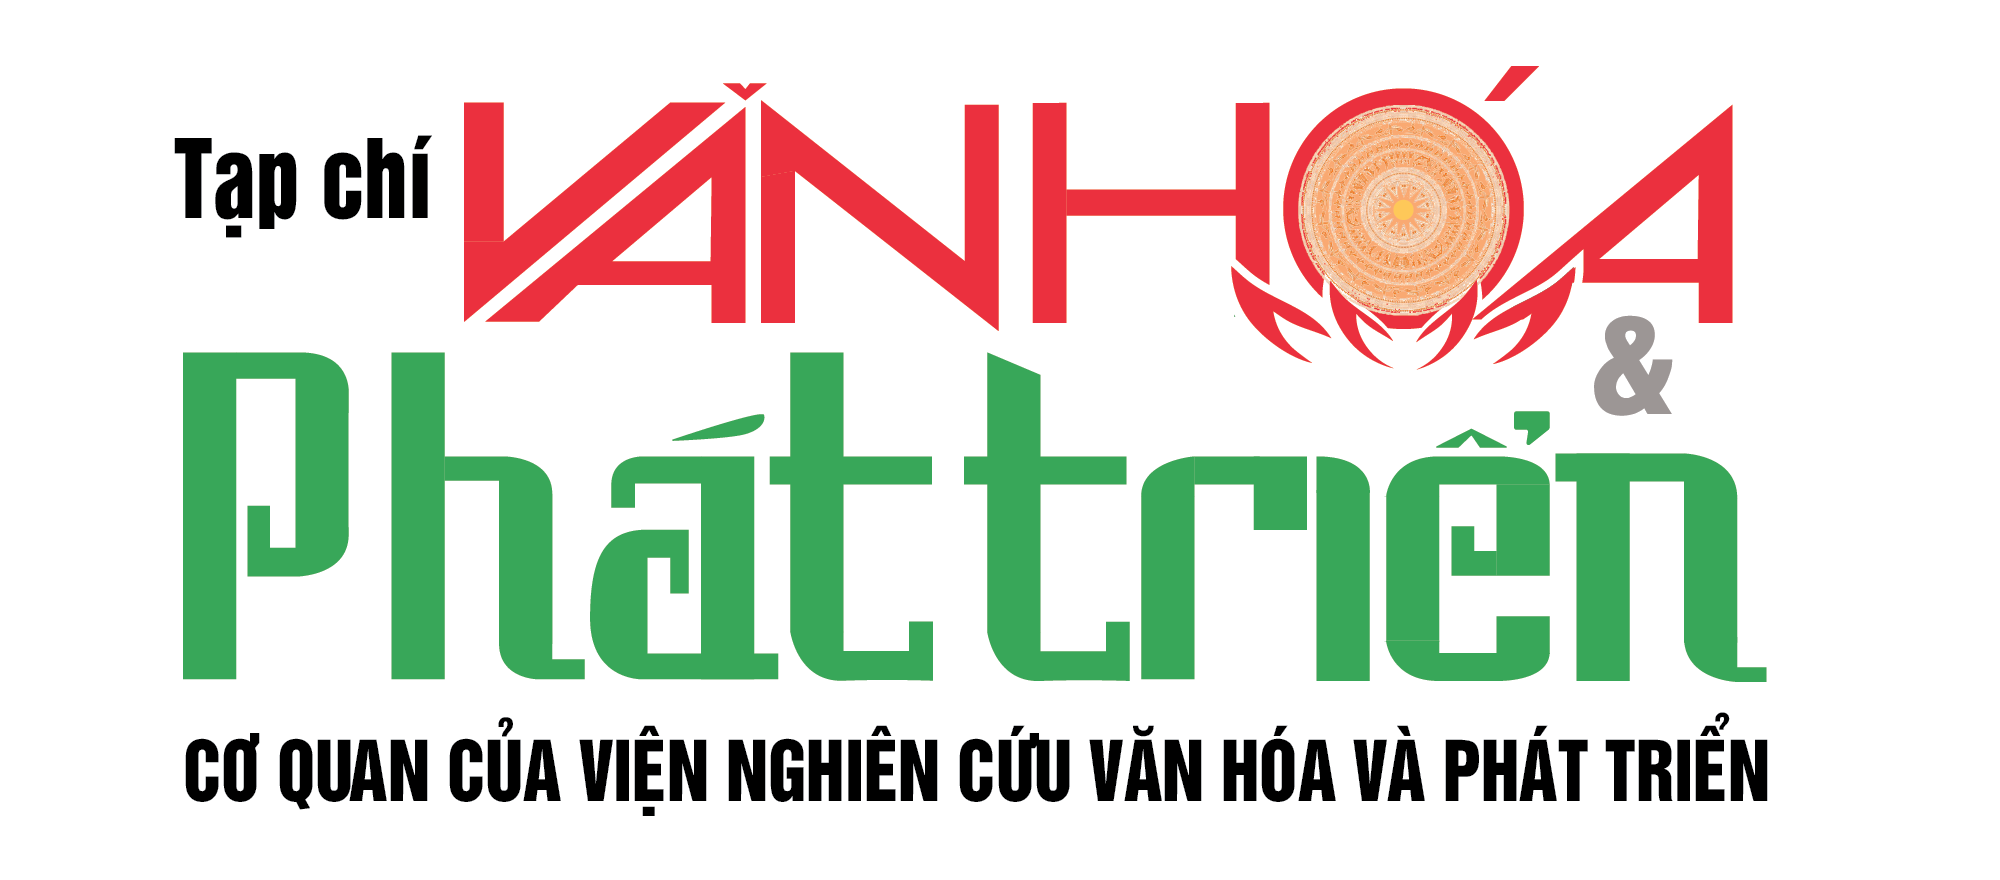 logo-van-hoa-phat-trien-1620826774-1683424473-1715049188.png